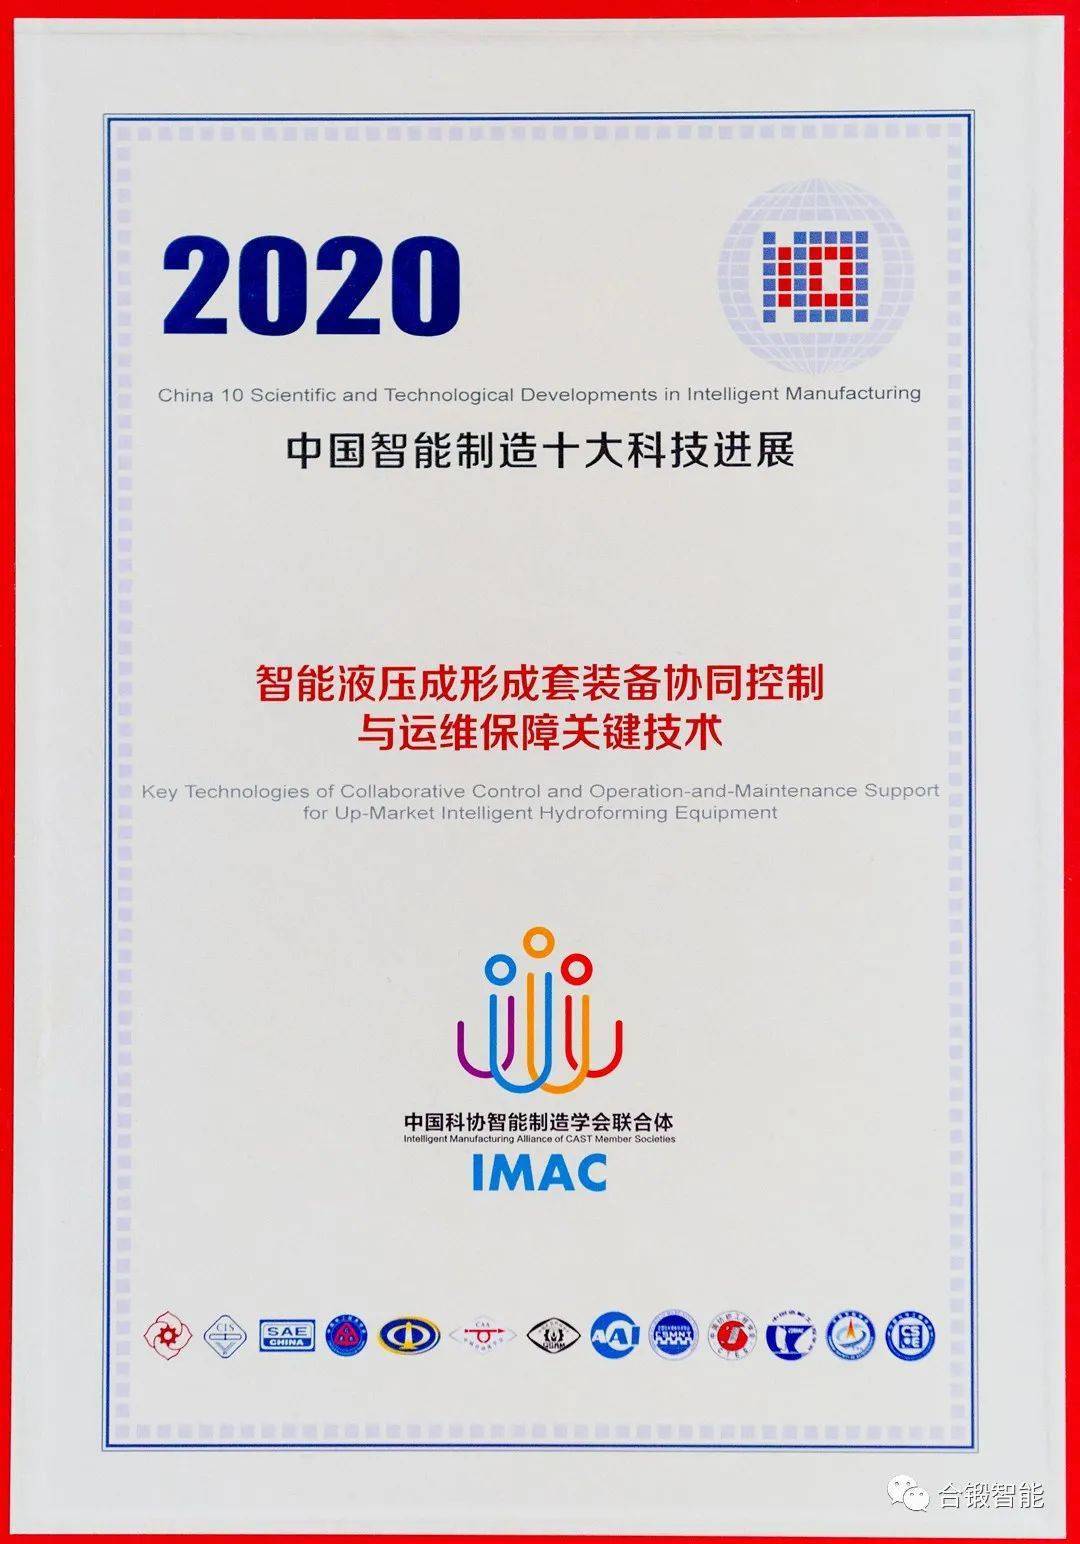 2020年中国十大集成_2020中国智能制造十大科技进展发布,这家皖企入选